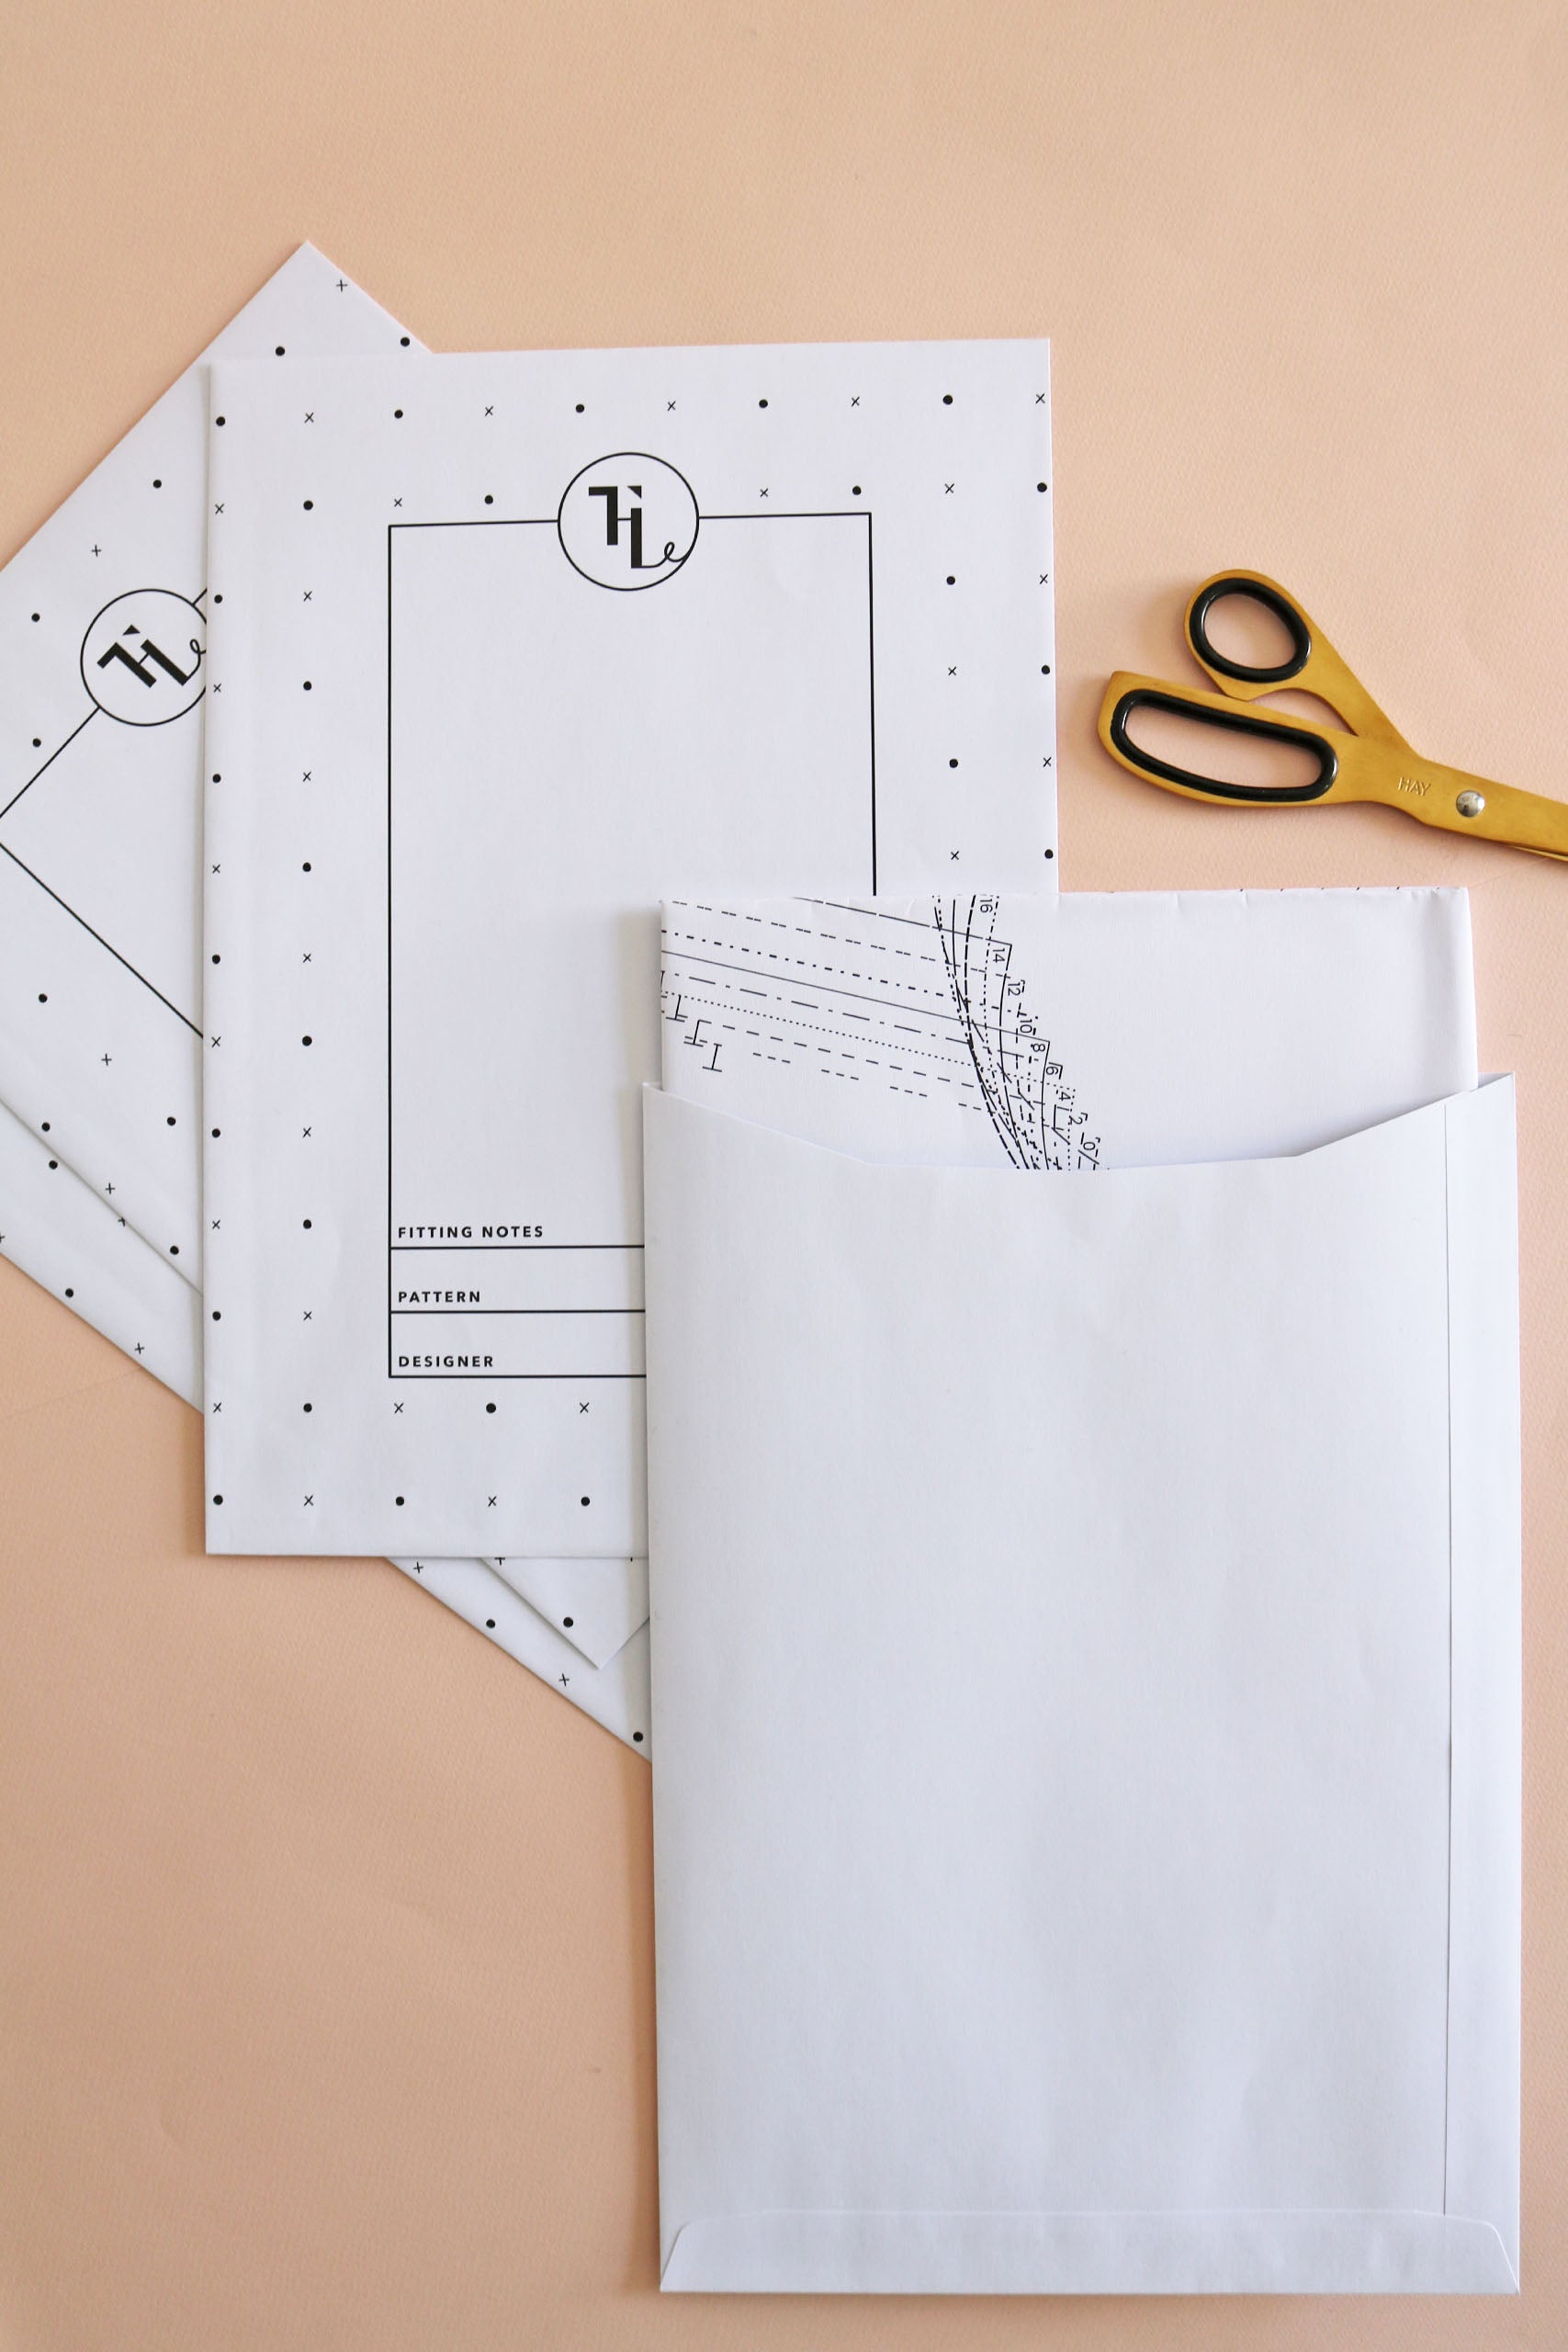 Sewing pattern storage envelopes